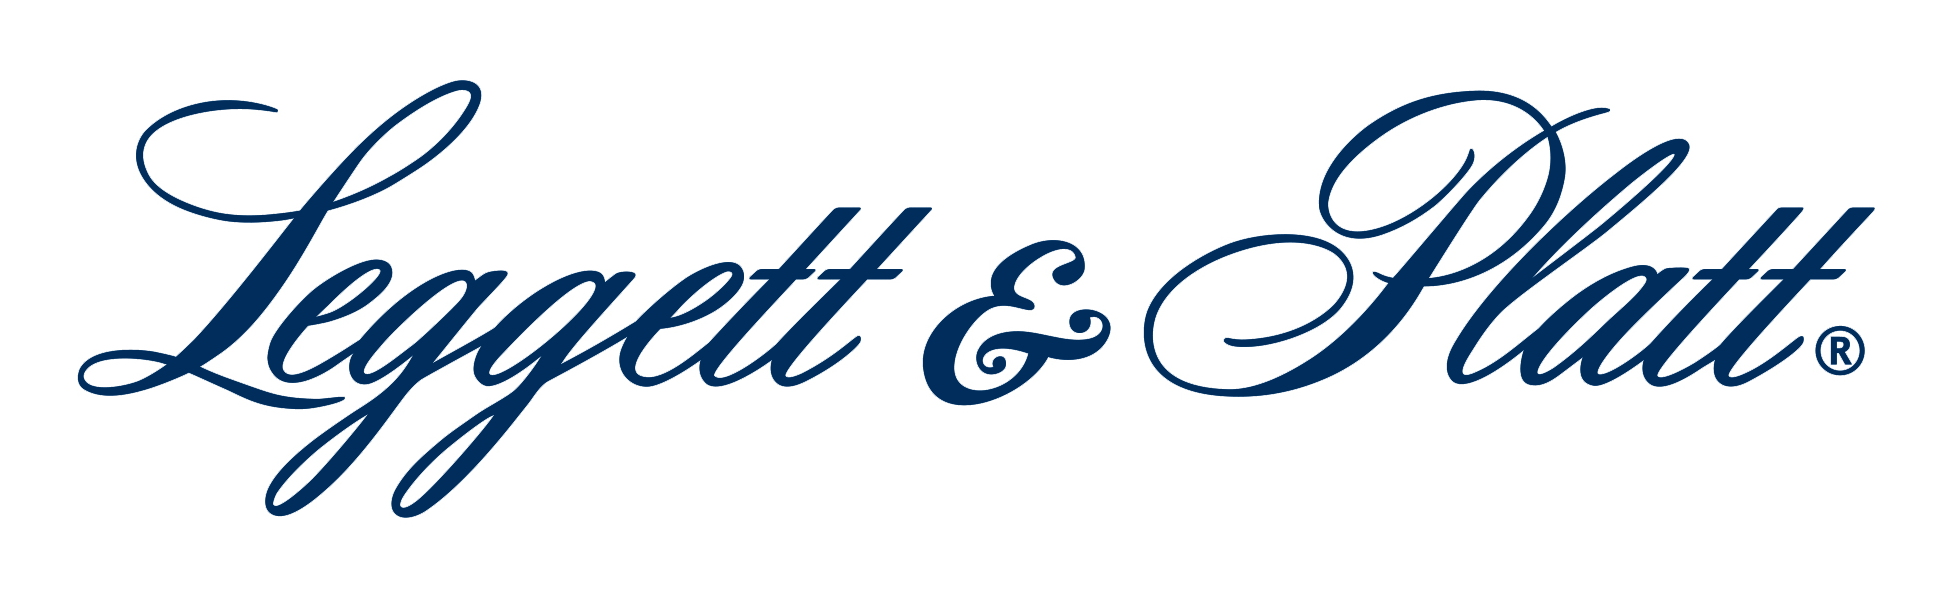 Leggett; Platt; Leggett Platt; Leggett and Platt; Leggett & Platt; L&P; Leggett Platt logo